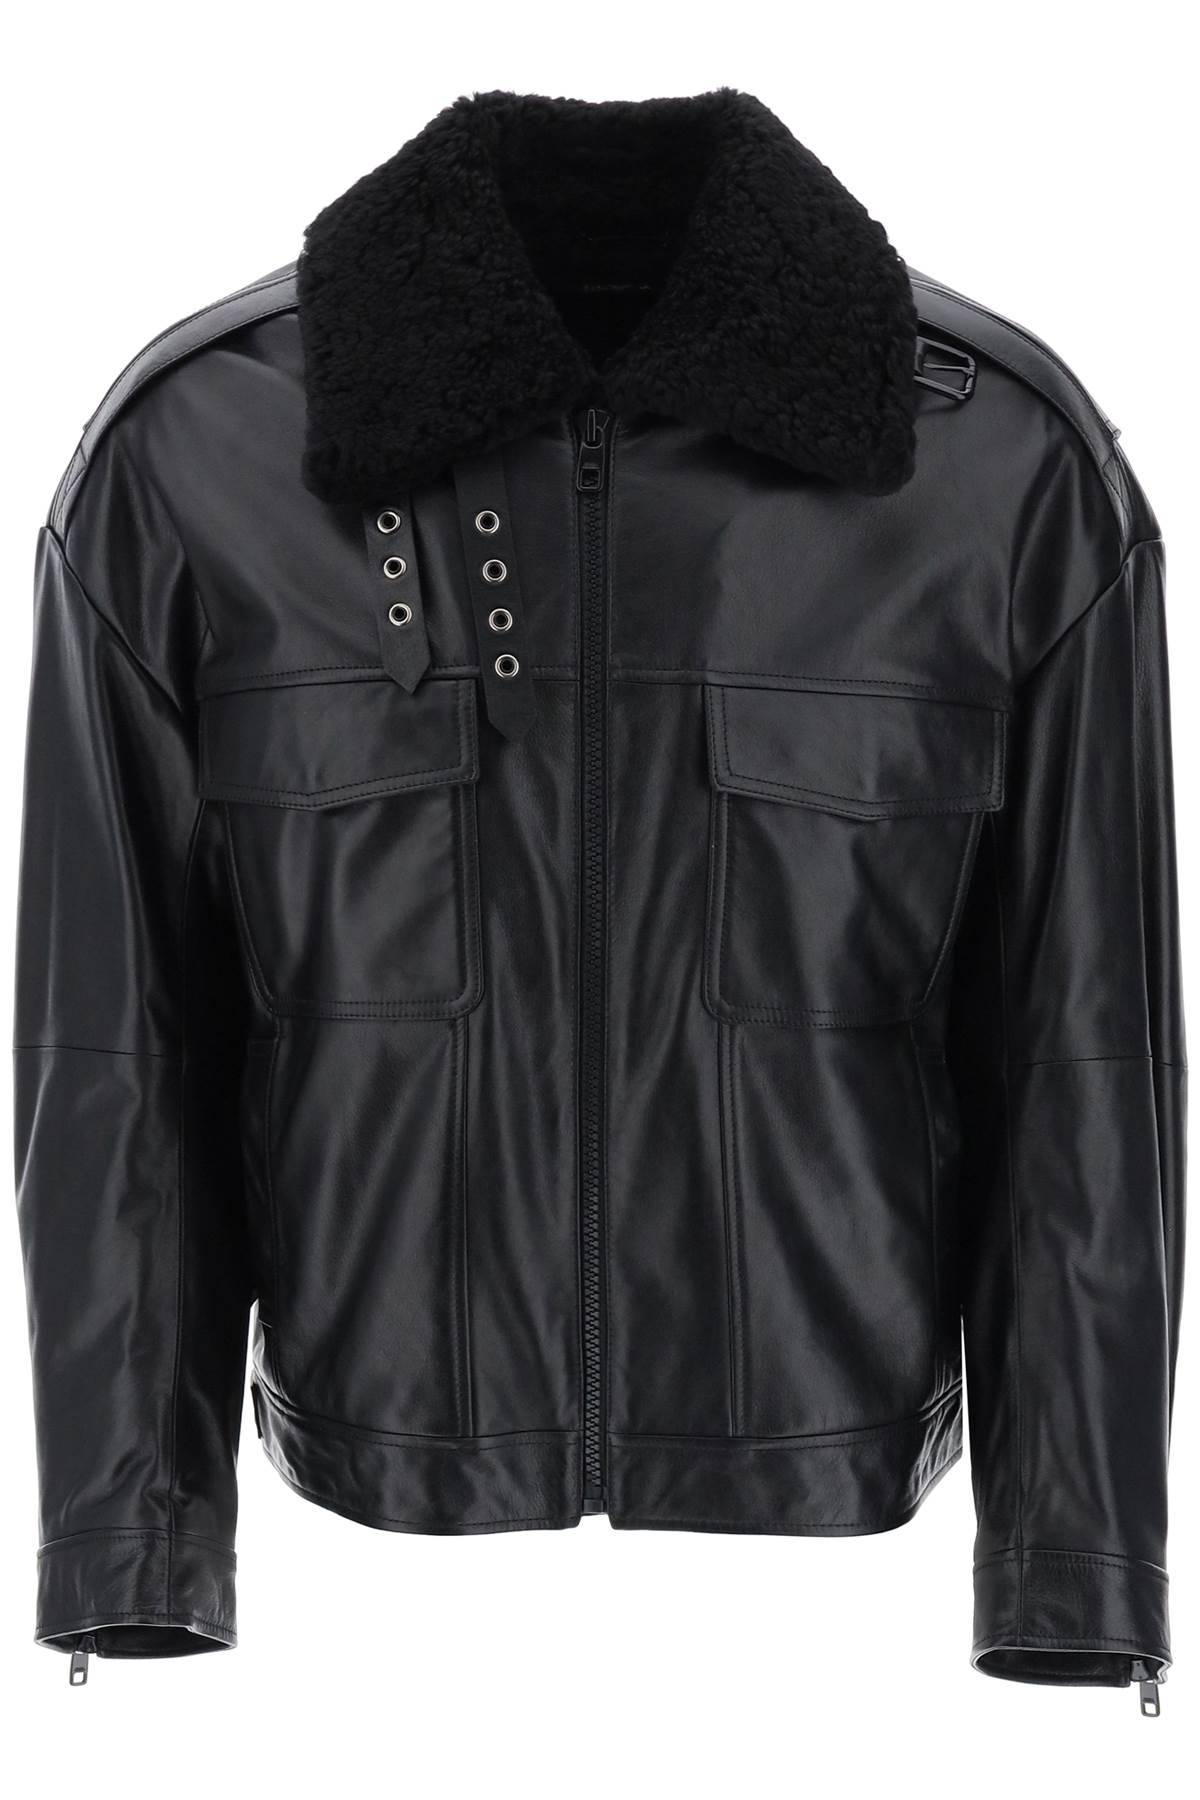 Dolce & Gabbana DOLCE & GABBANA leather-and-fur biker jacket